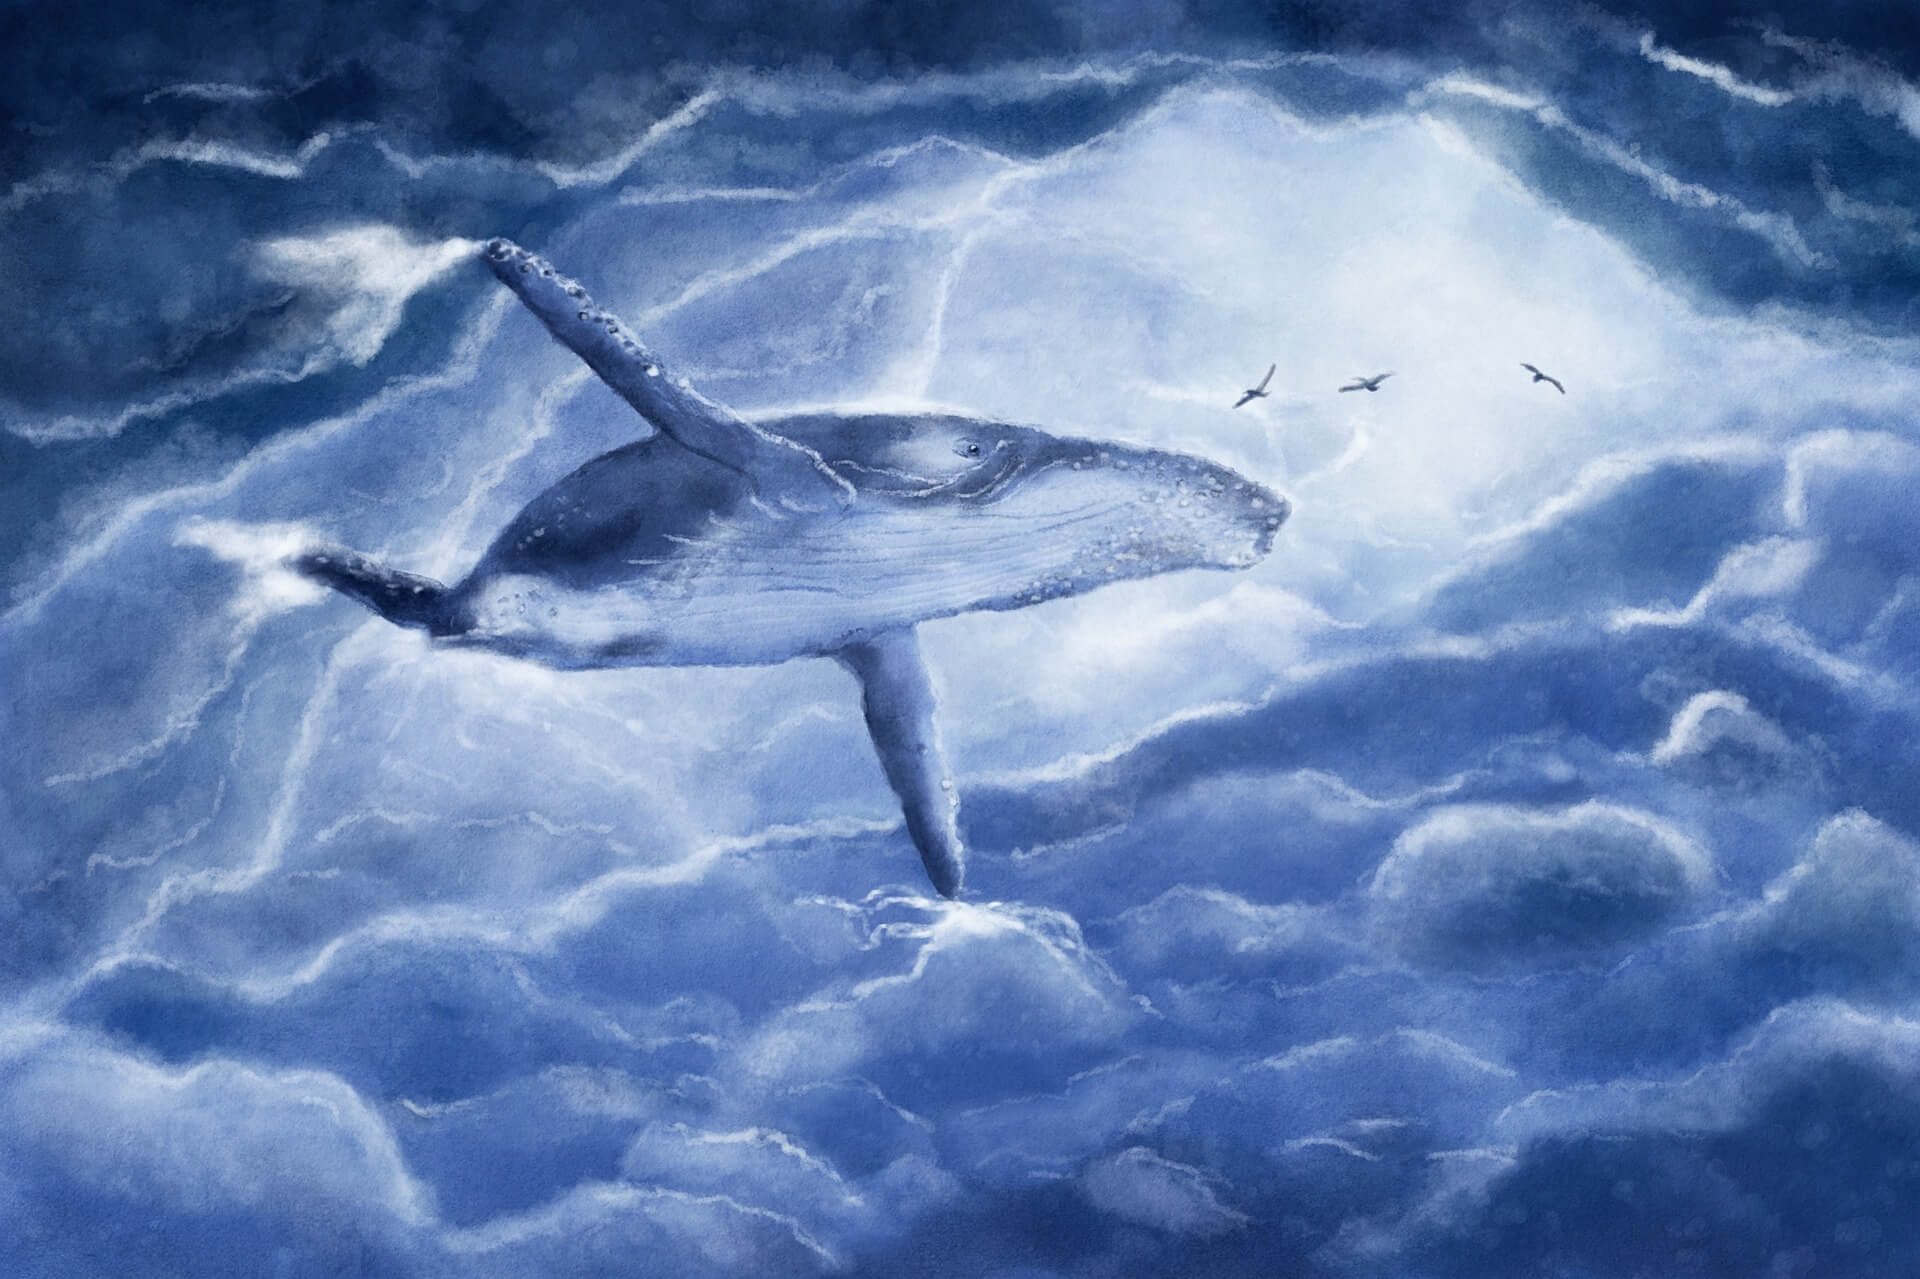 这是一幅描绘海洋生物的艺术作品，图中展示了一只庞大的鲸鱼在蔚蓝色的海水中游弋，上方有几只海鸟飞翔。